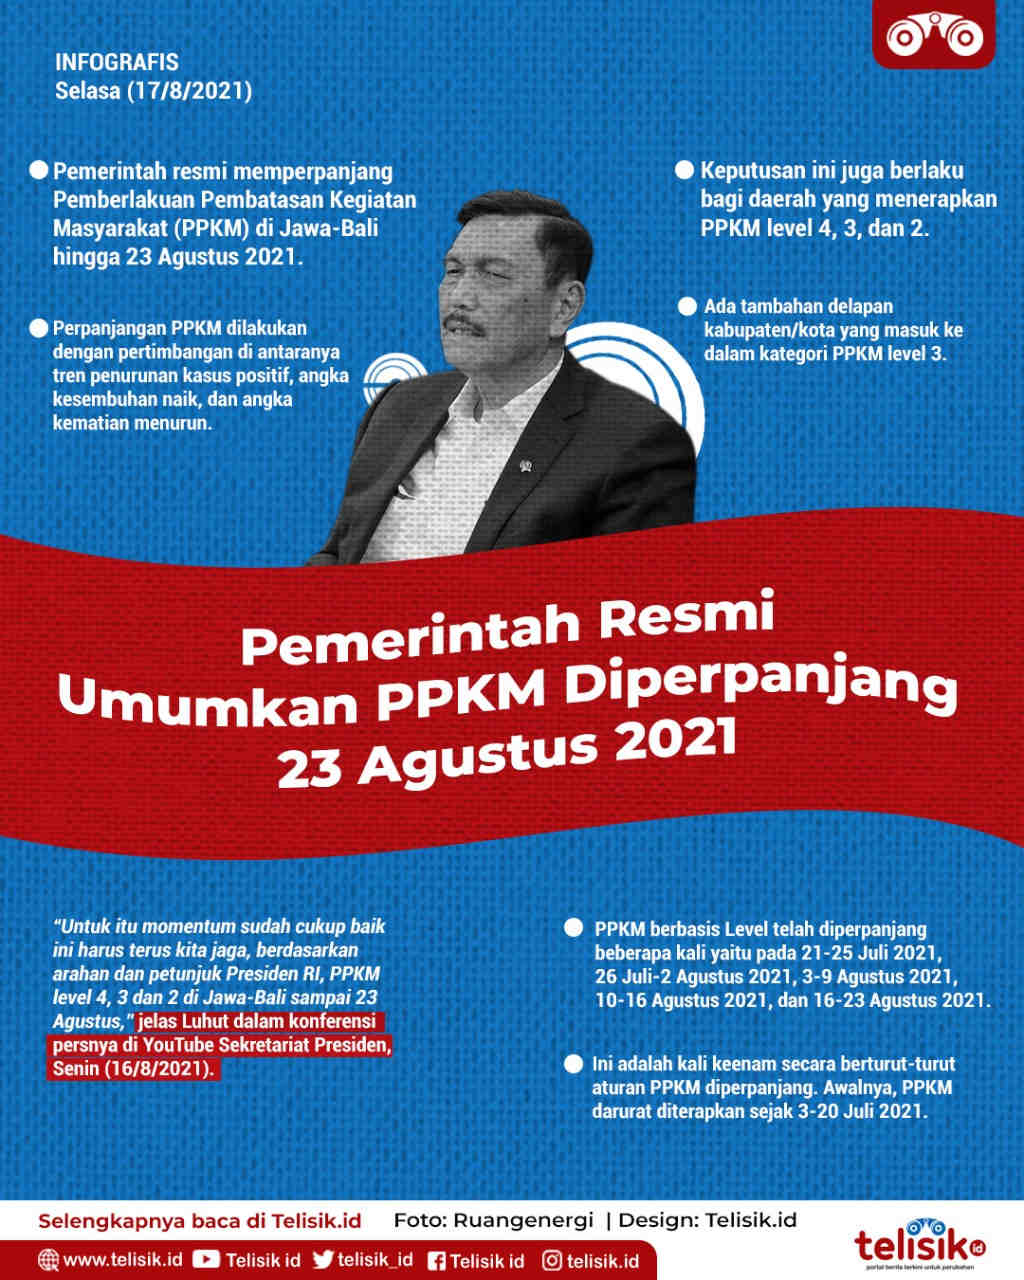 Infografis: Pemerintah Resmi Umumkan PPKM Diperpanjang 23 Agustus 2021